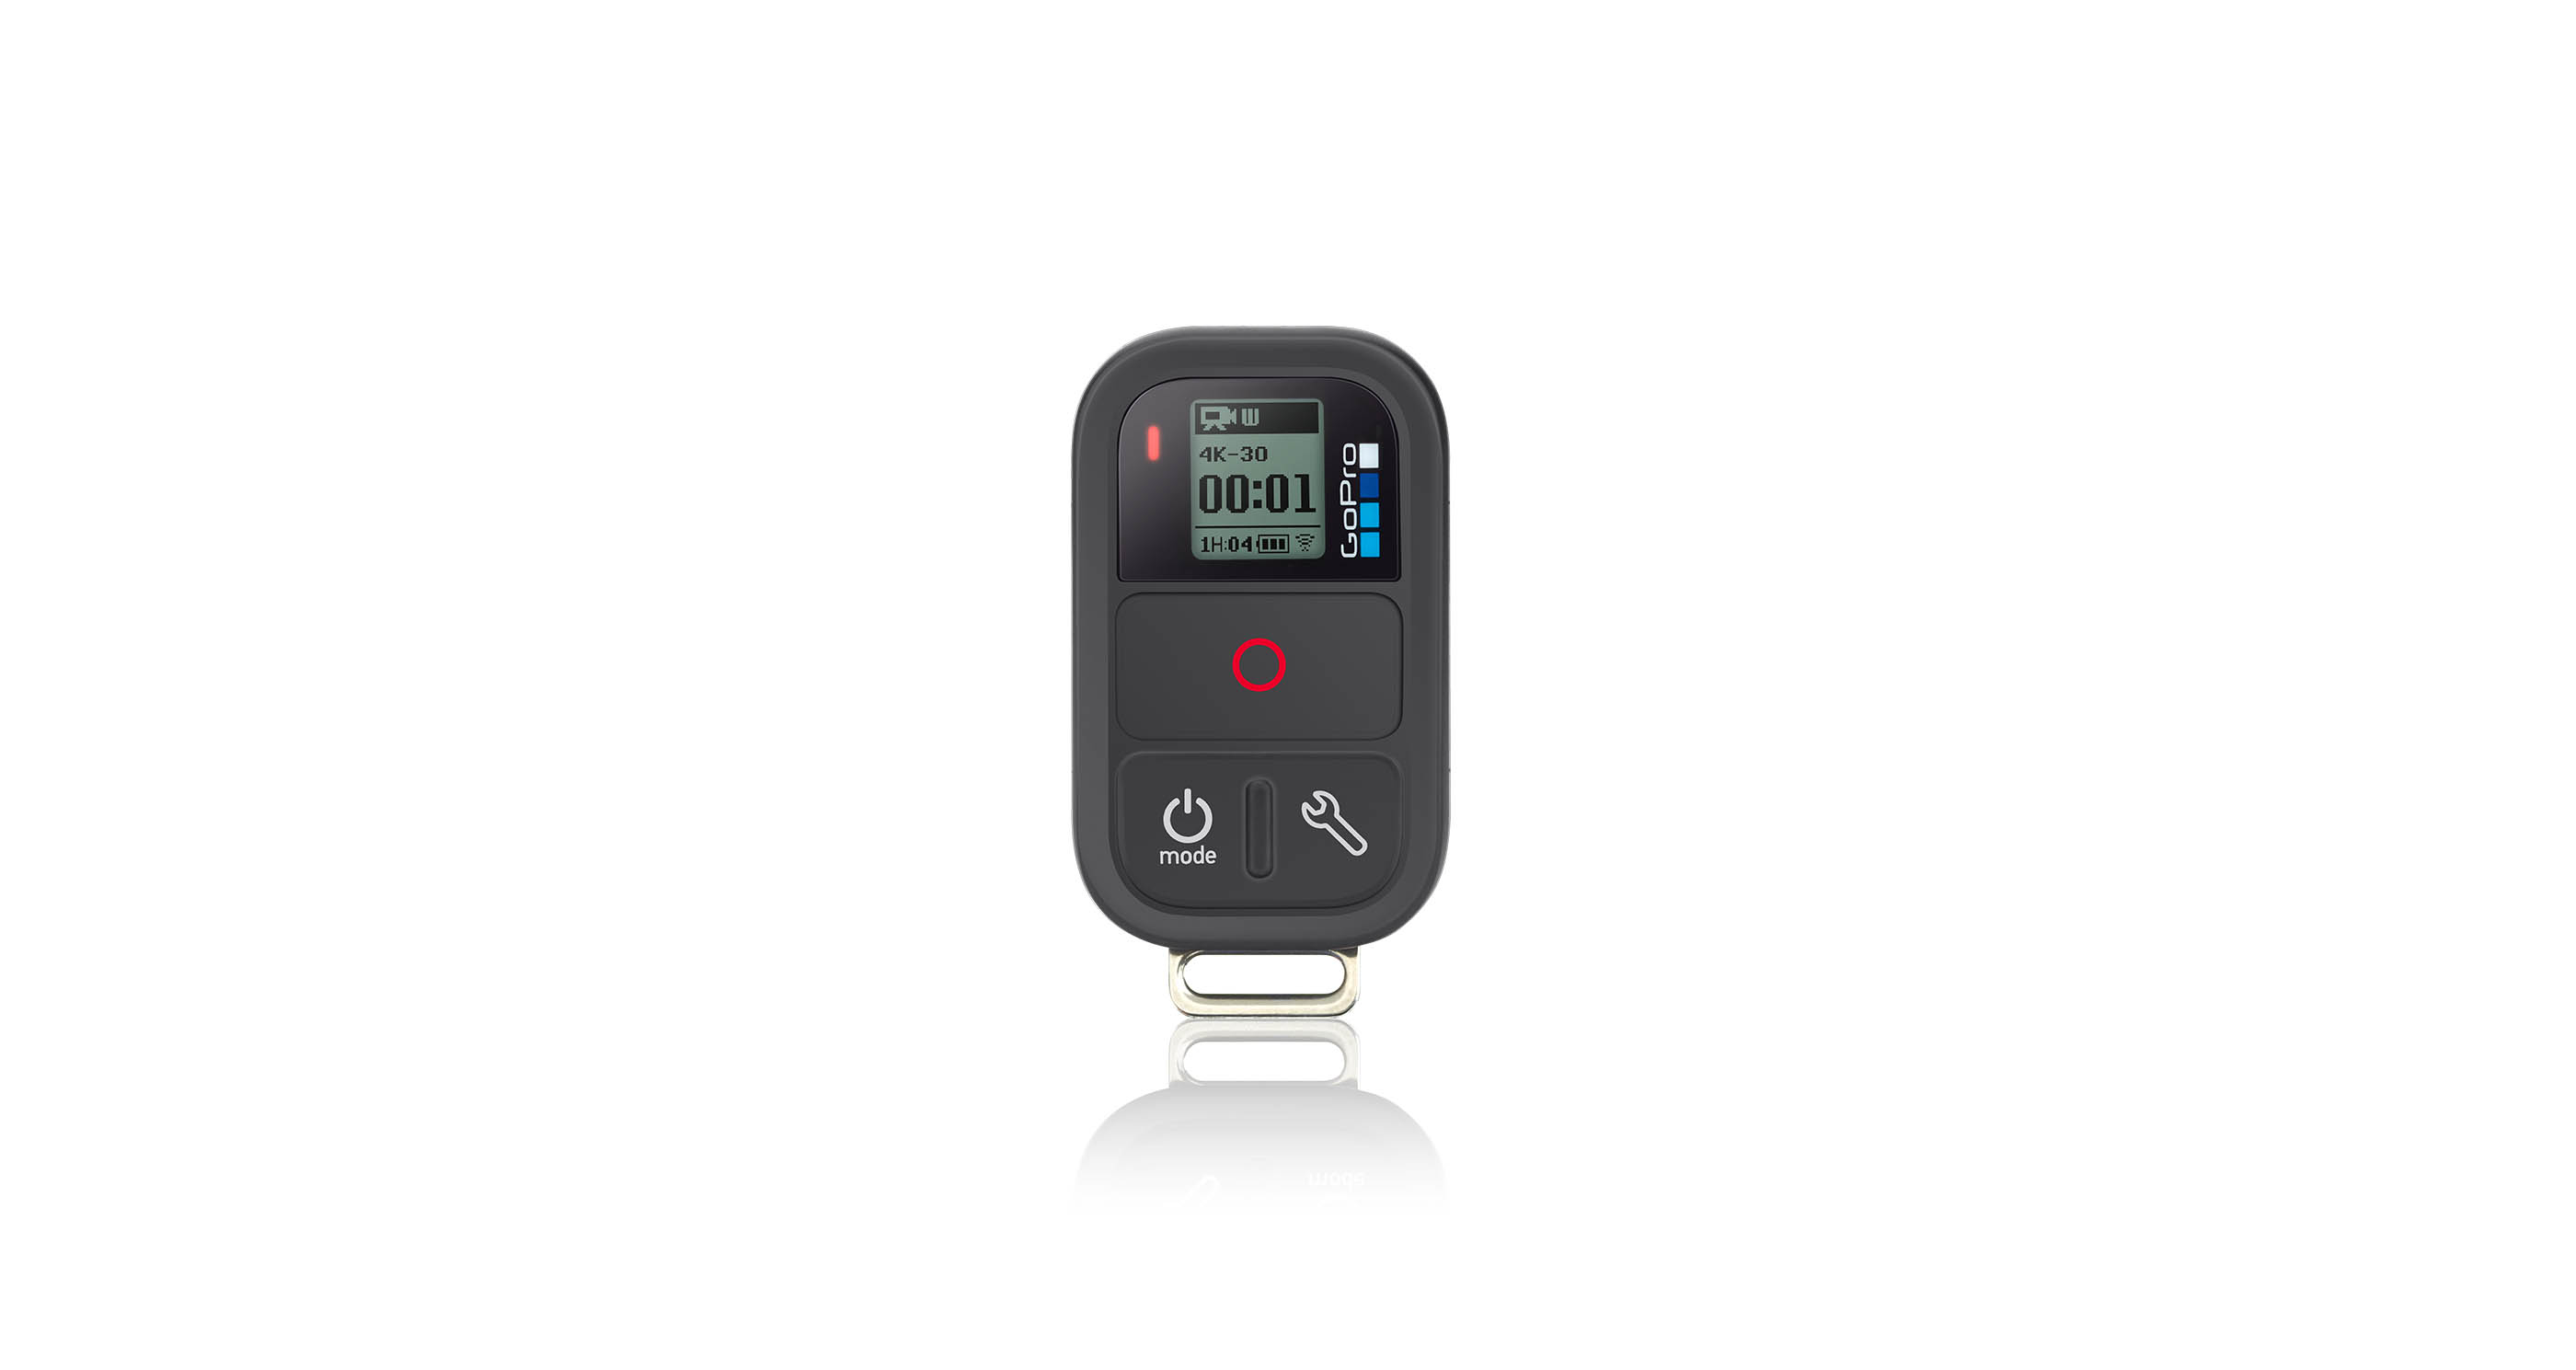 GoPro Hero4 Silver-Black Smart Camera WI-FI Remote Control Wireless ARMTE-002 